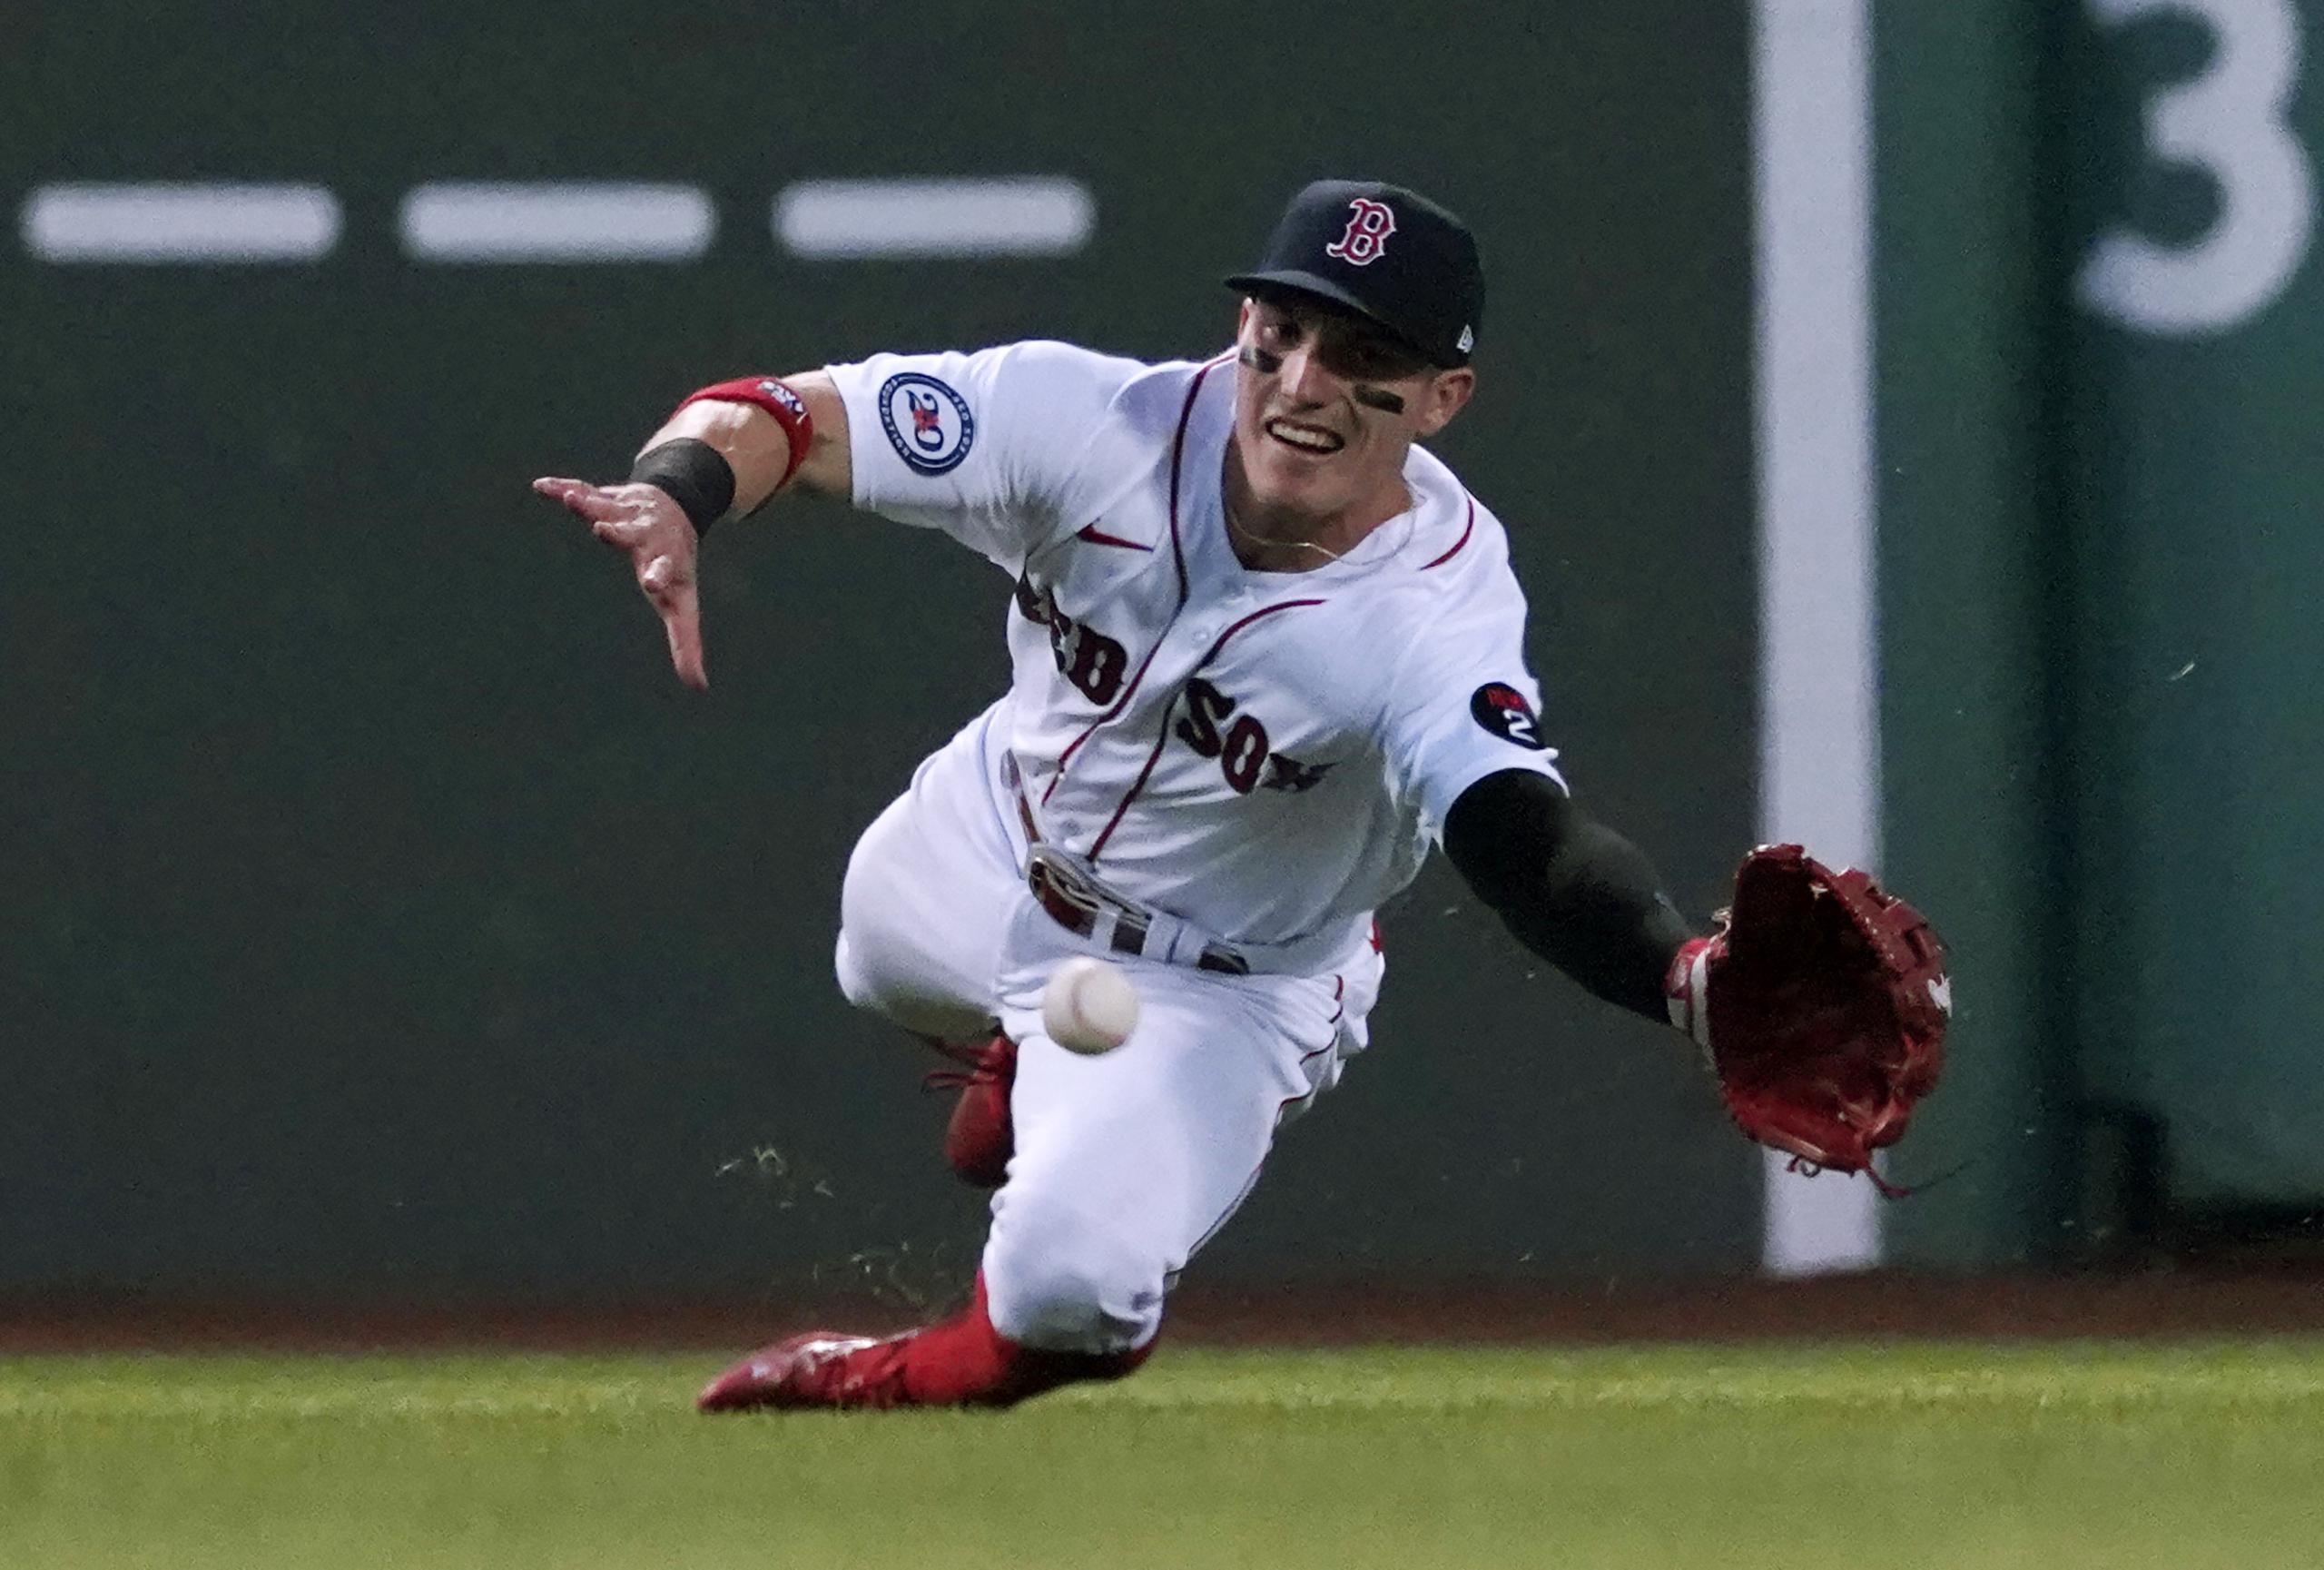 El jardinero de los Red Sox, Jarren Durán, se lanza sin suerte tras un batazo durante el encuentro entre Boston y los Cardinals de San Luis, el cual Boston ganó 6-5.